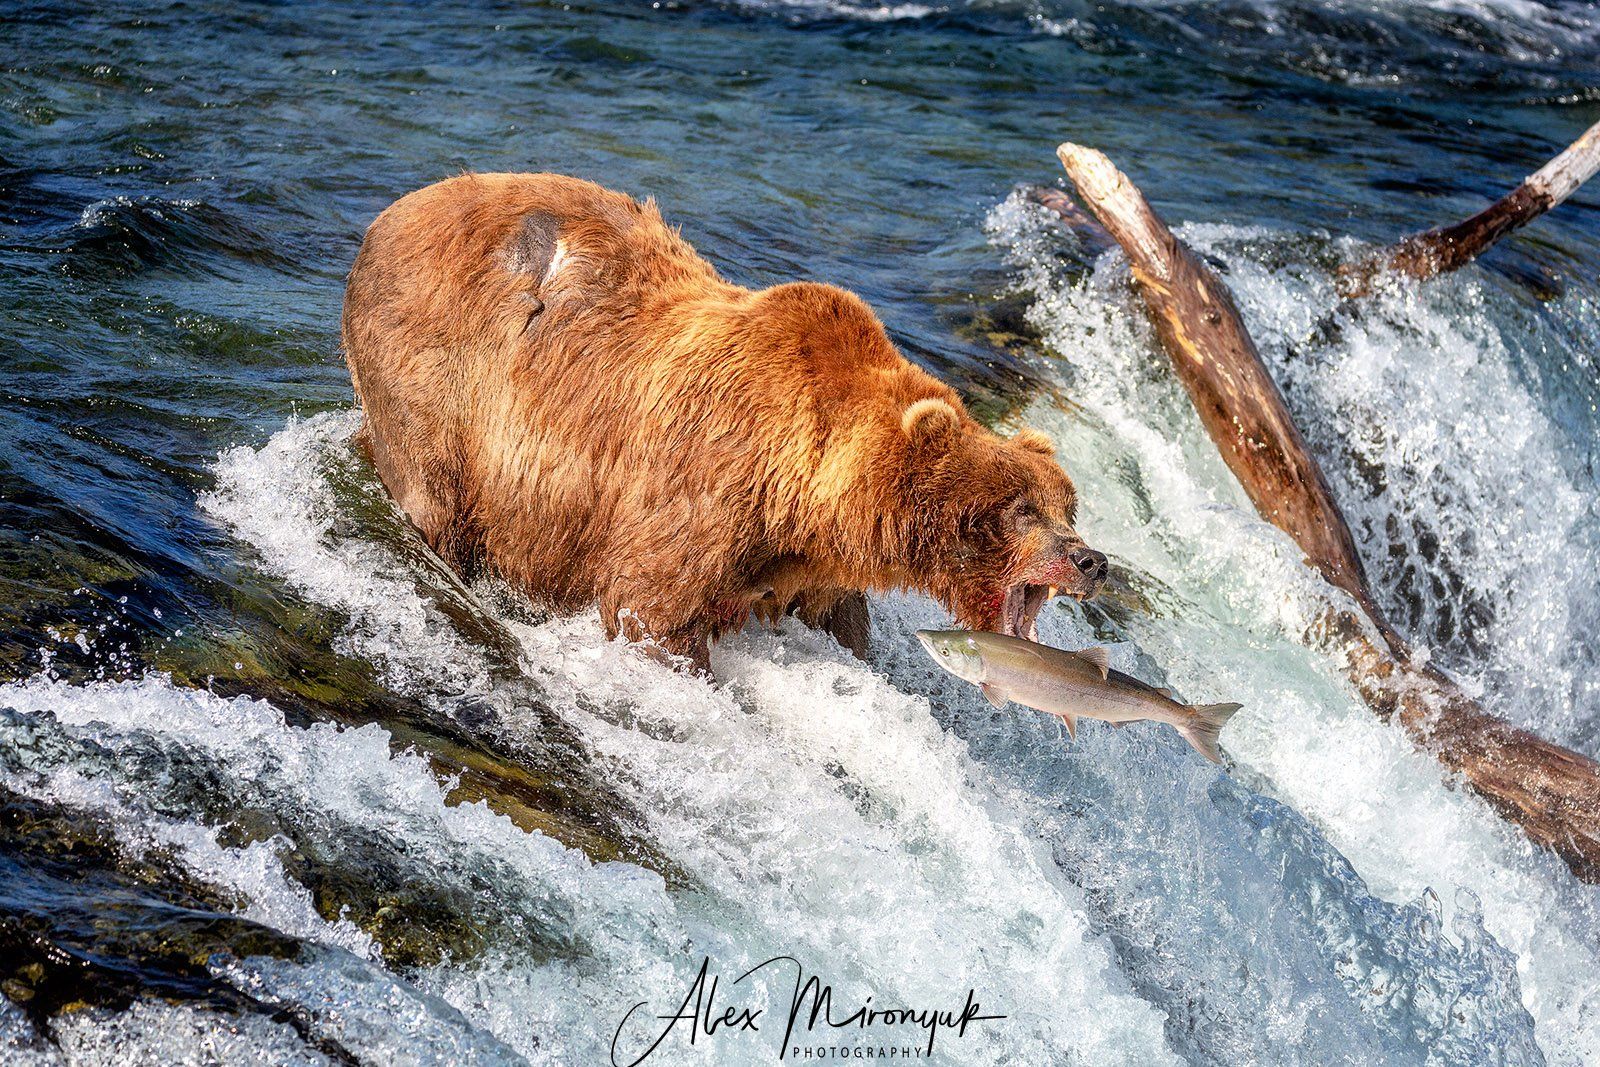 сша, аляска, медведь, гризли, рыбалка, лосось, вода, река, природа, дикая, Alex Mironyuk